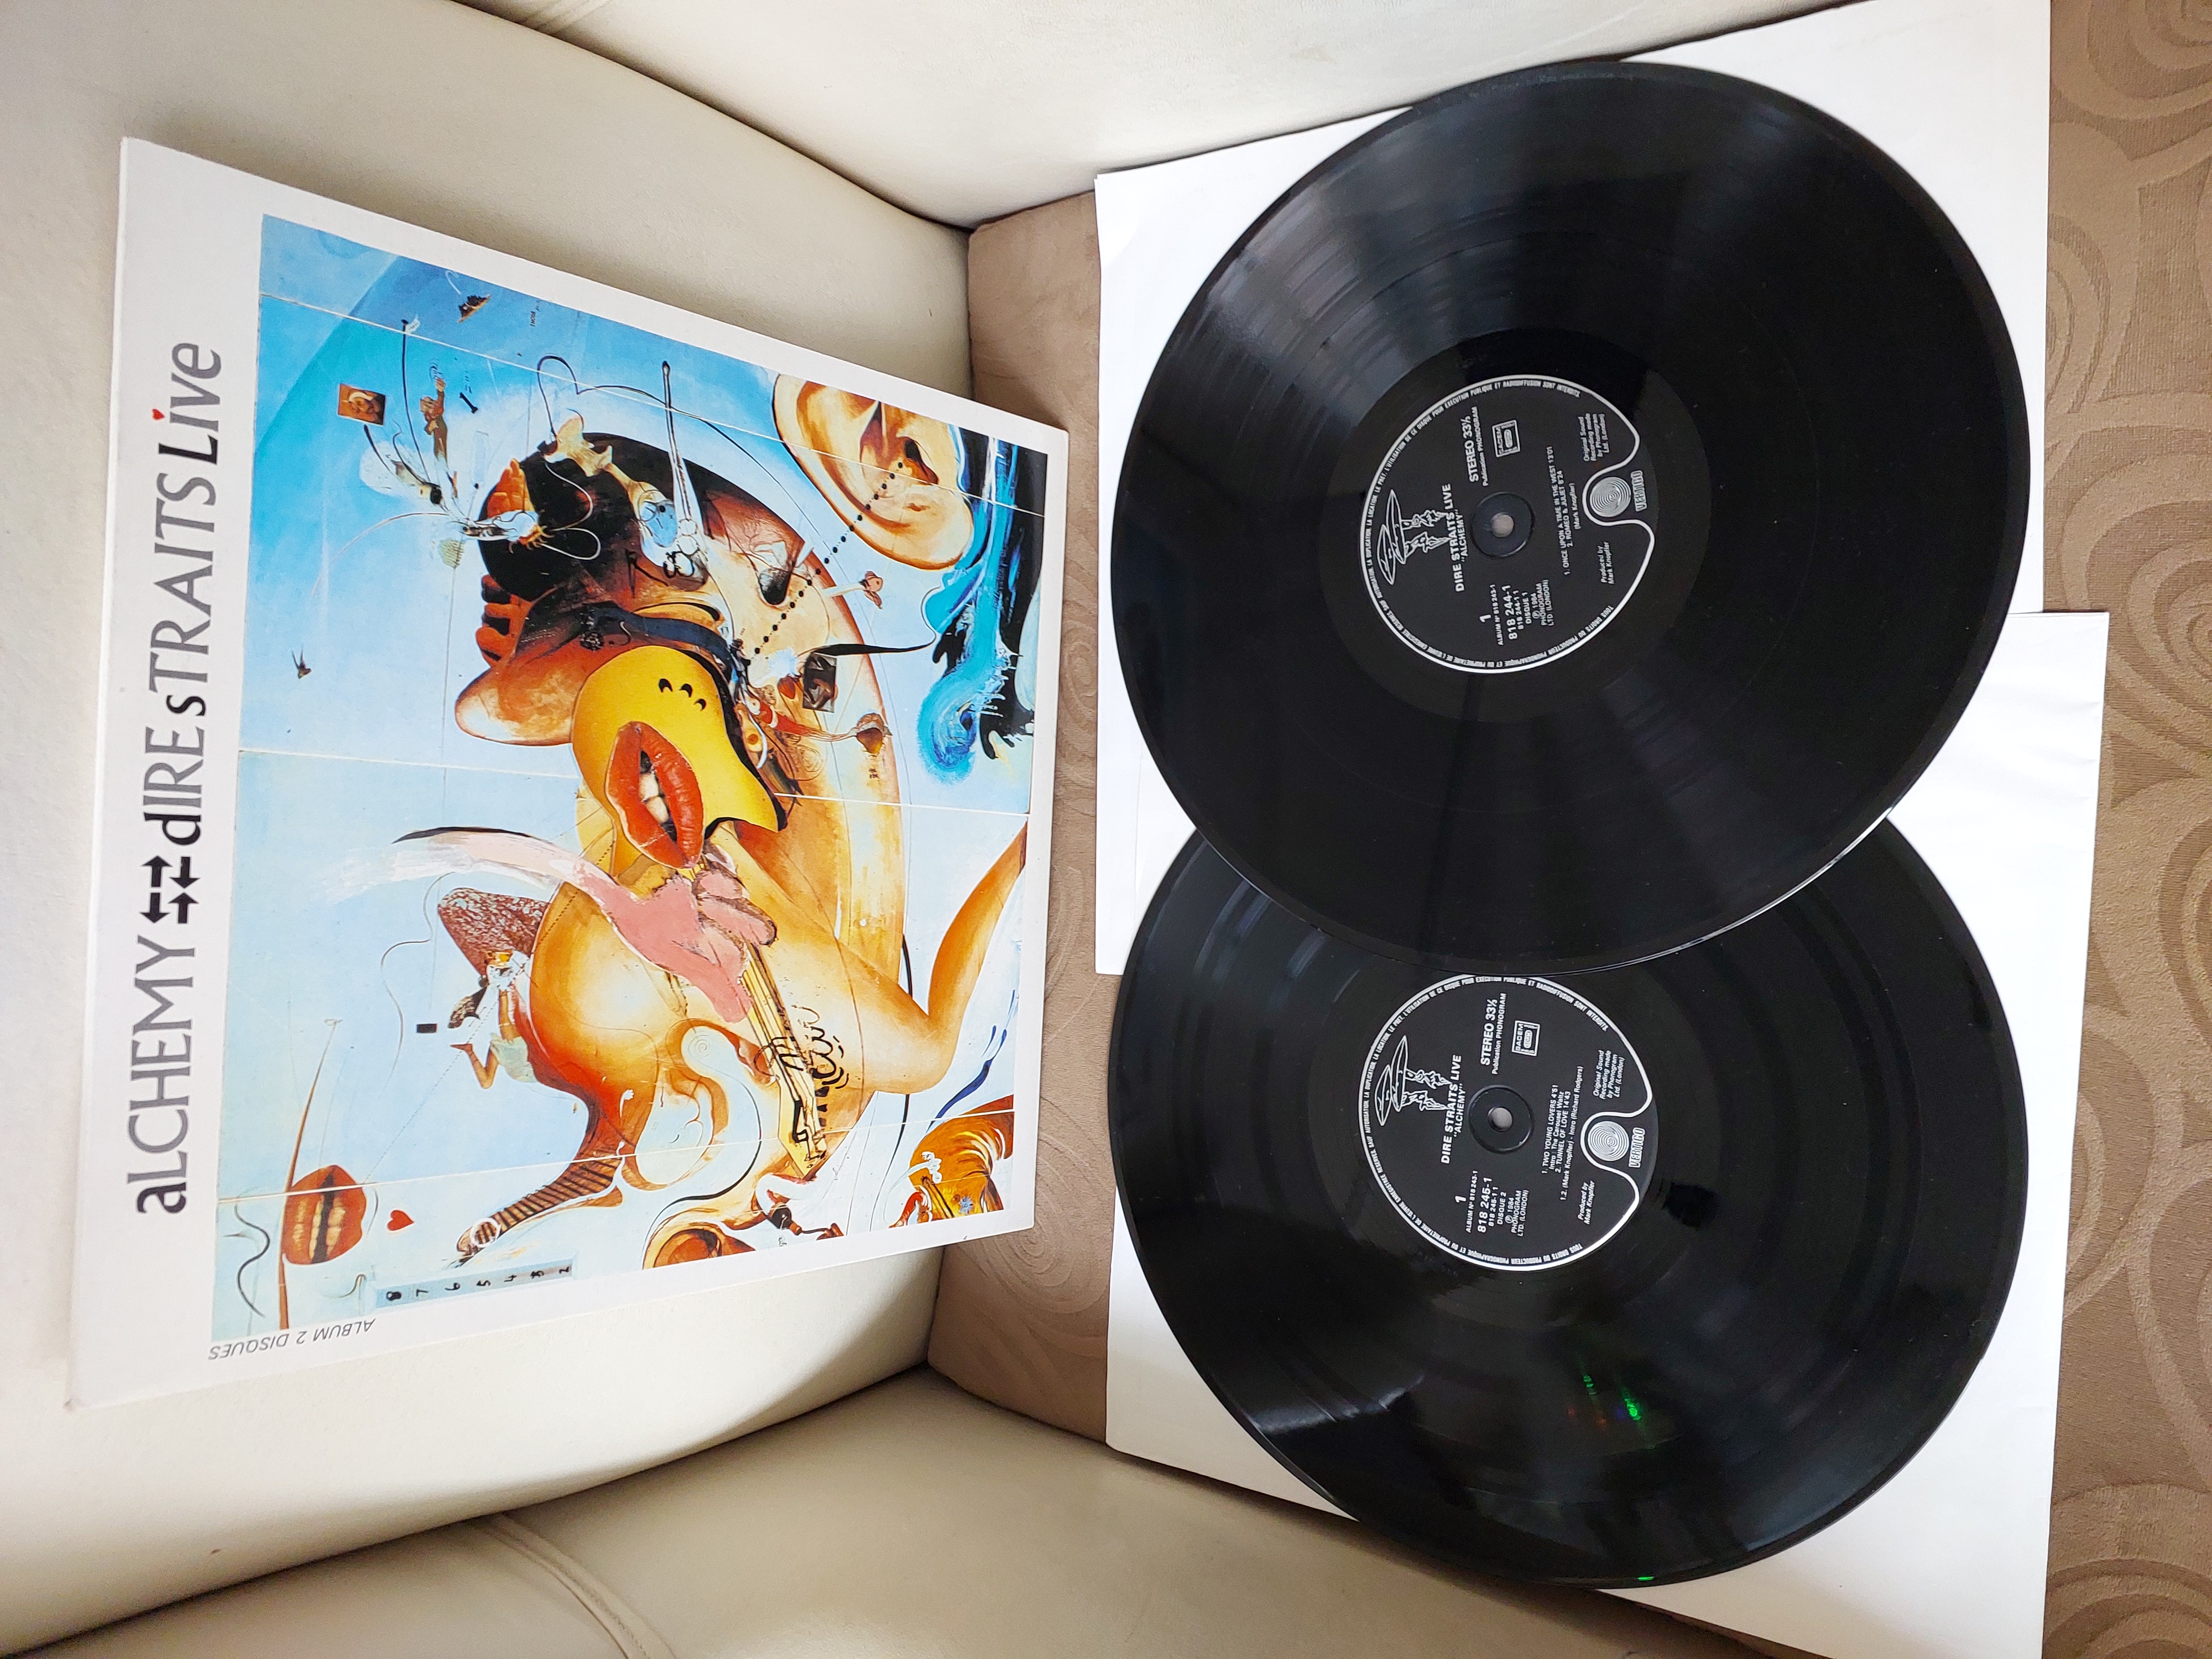 Dire Straits – Alchemy - Dire Straits Live - 1984 Fransa Basım - Double 2XLP Plak